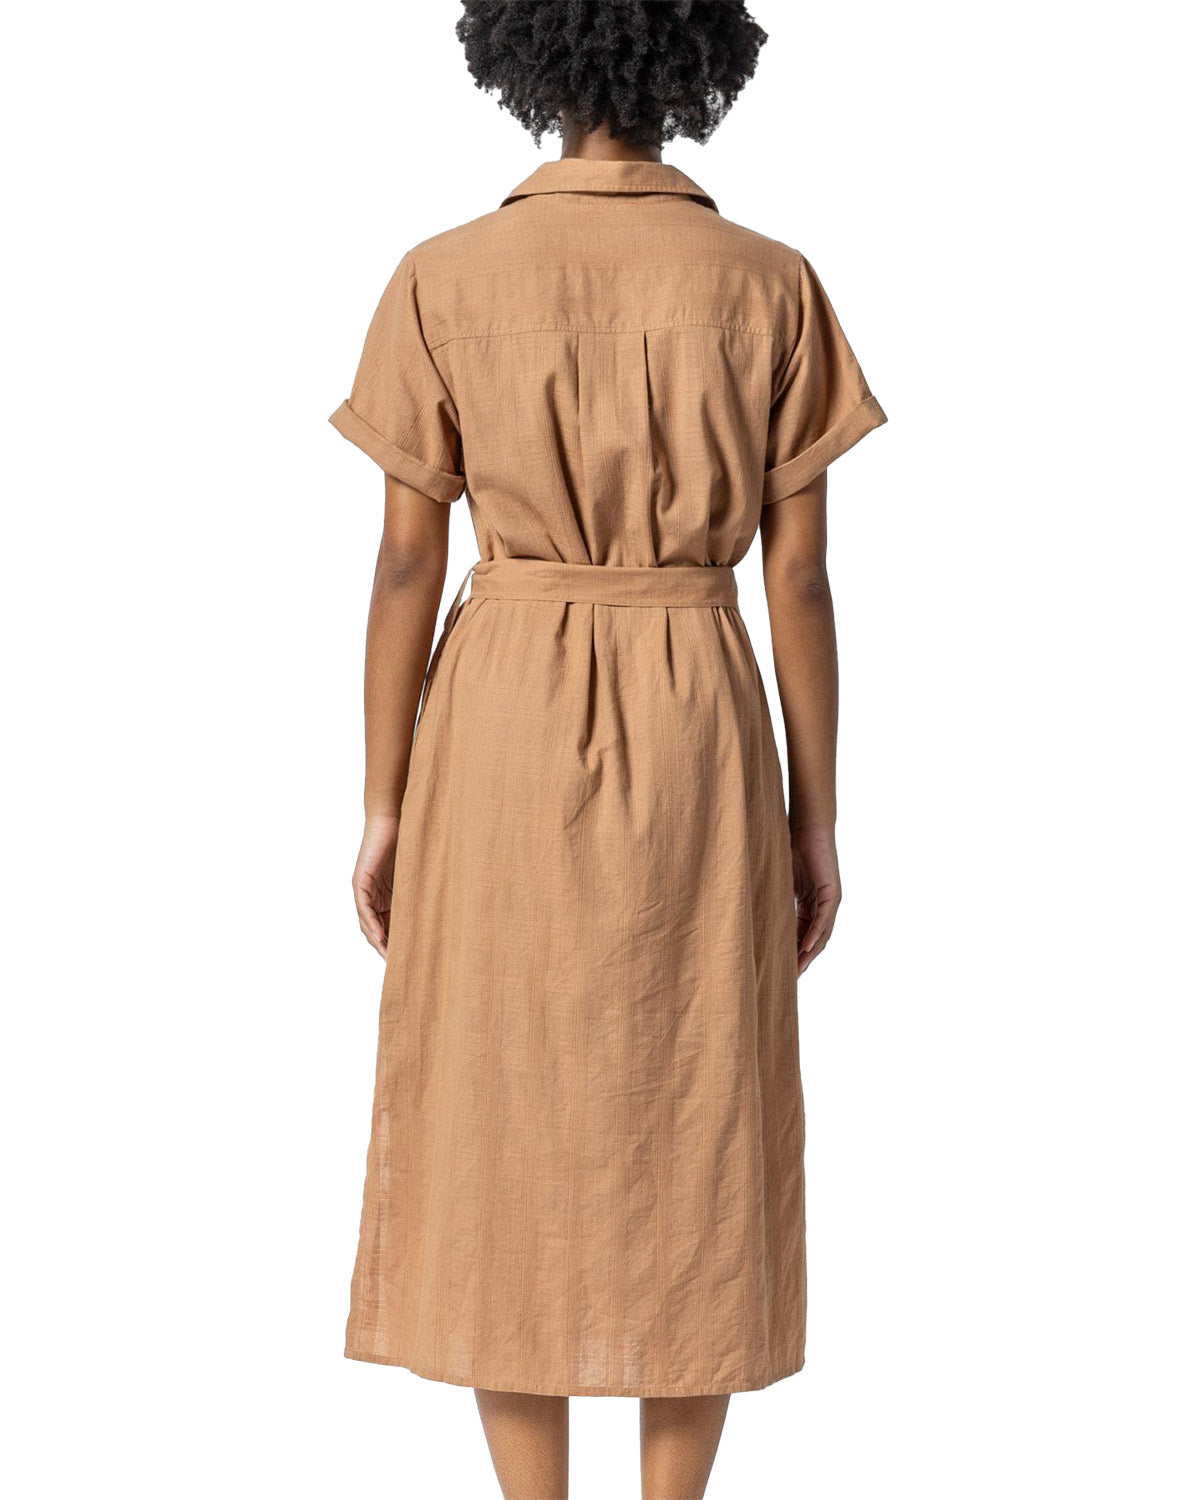 Belted Shirt Dress (Beechwood)